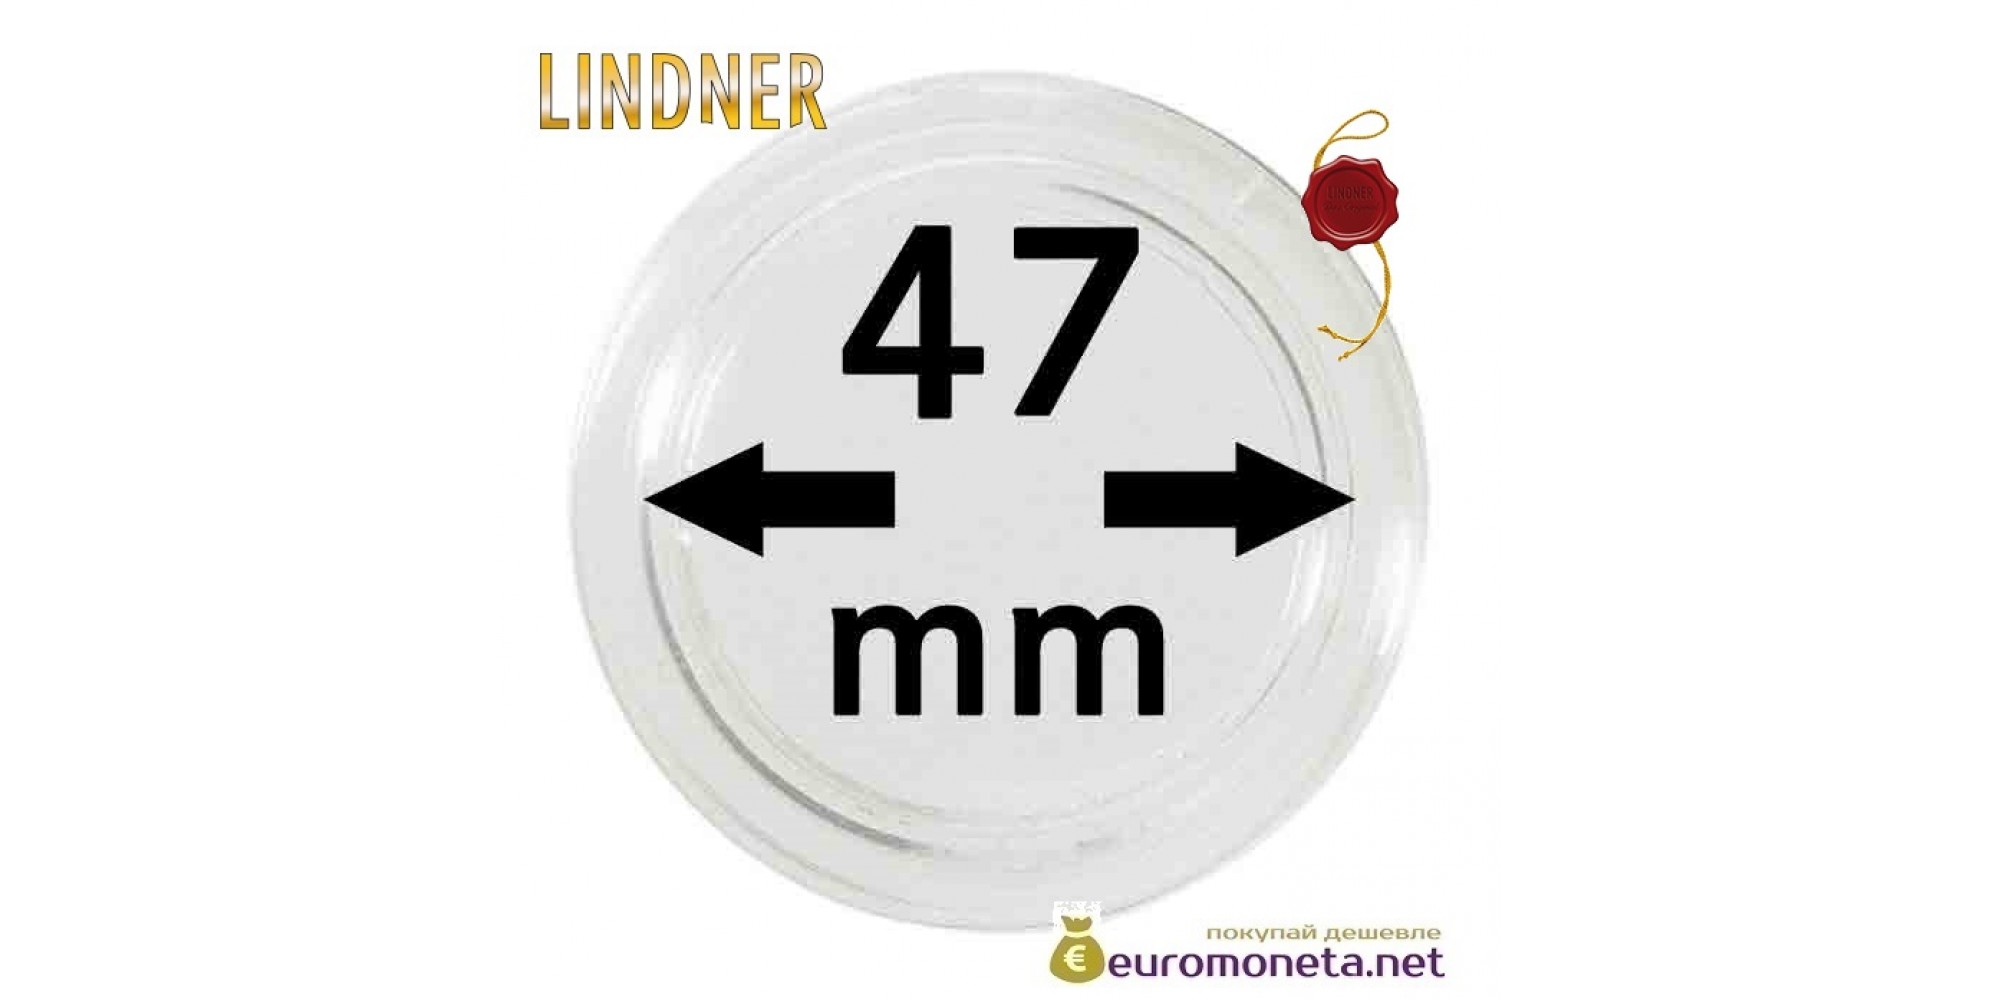 Lindner капсула для хранения монет 47 мм внутренний диаметр, внешний 53 мм, 10 штук, Германия